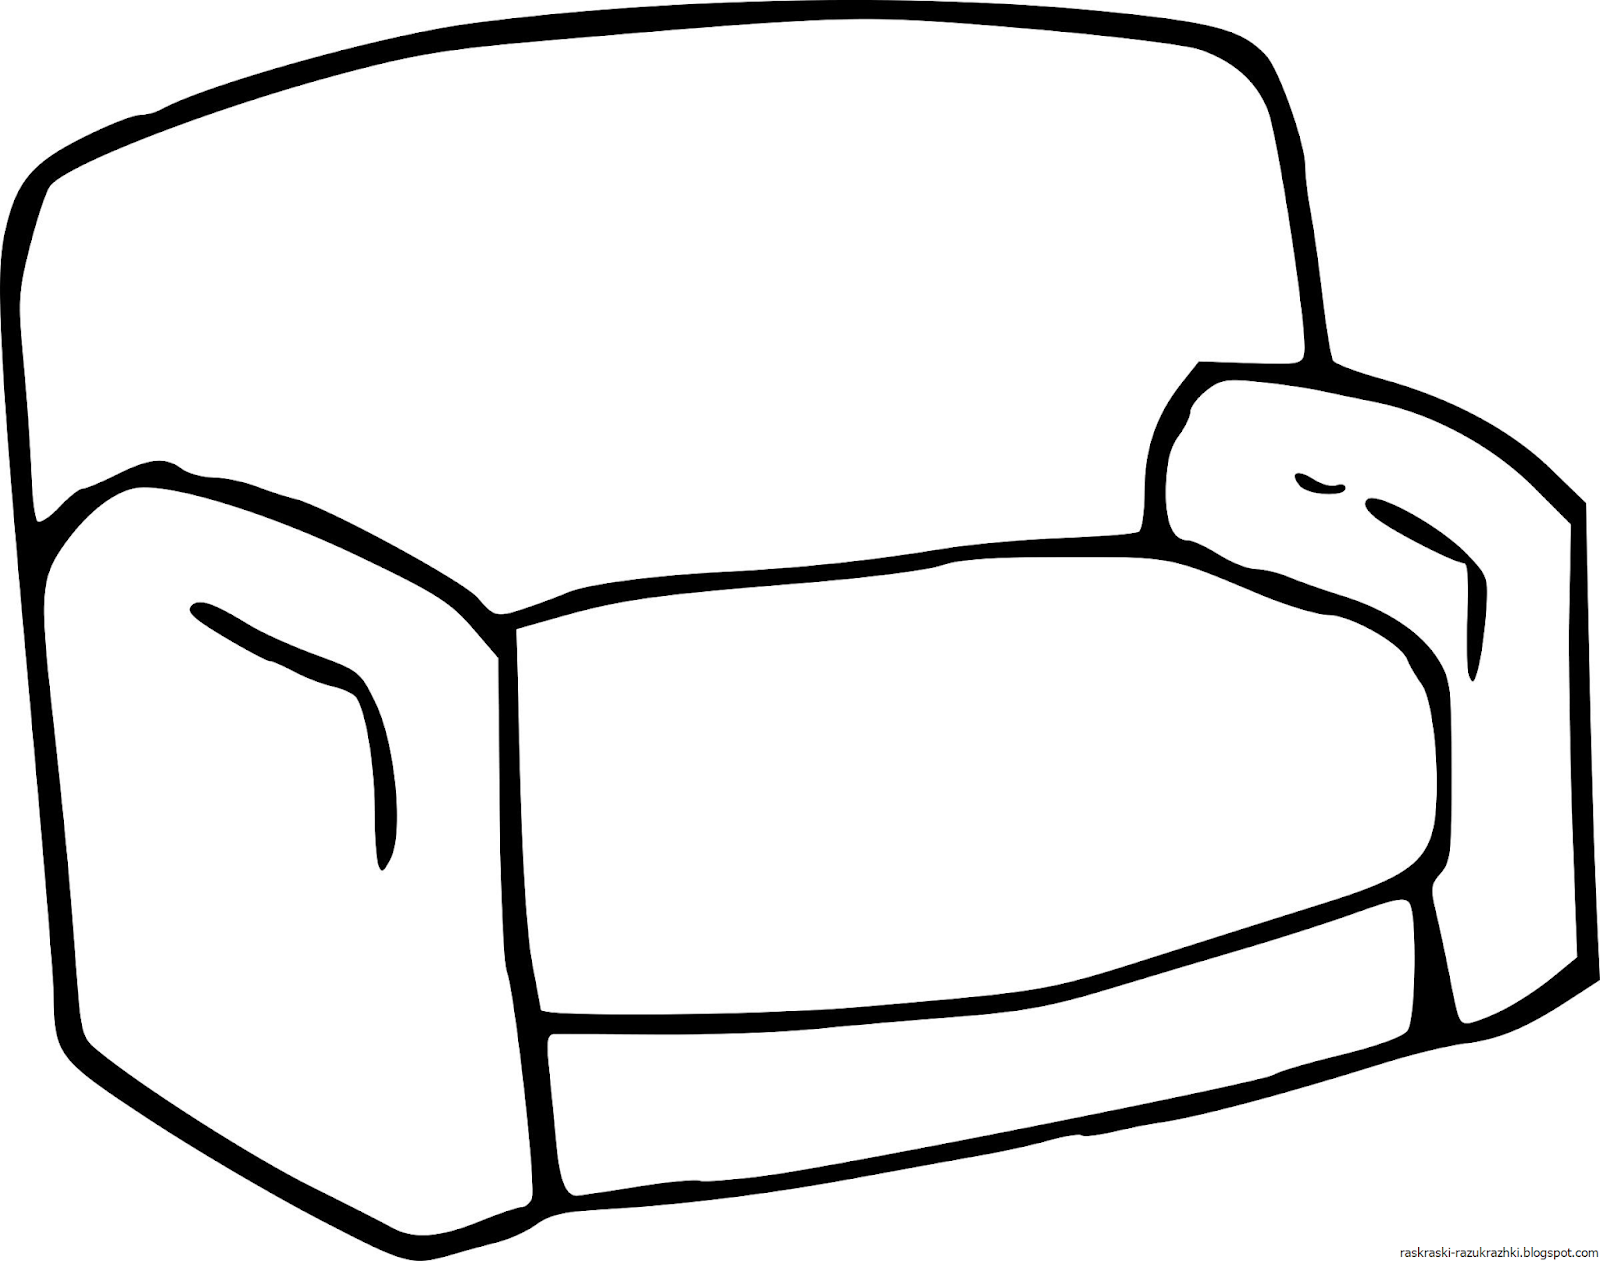 Раскраски Мебель Раскраски диваны, столы, шкафы, стулья, кресла и др Раскраски различных предметов интерьера для детей